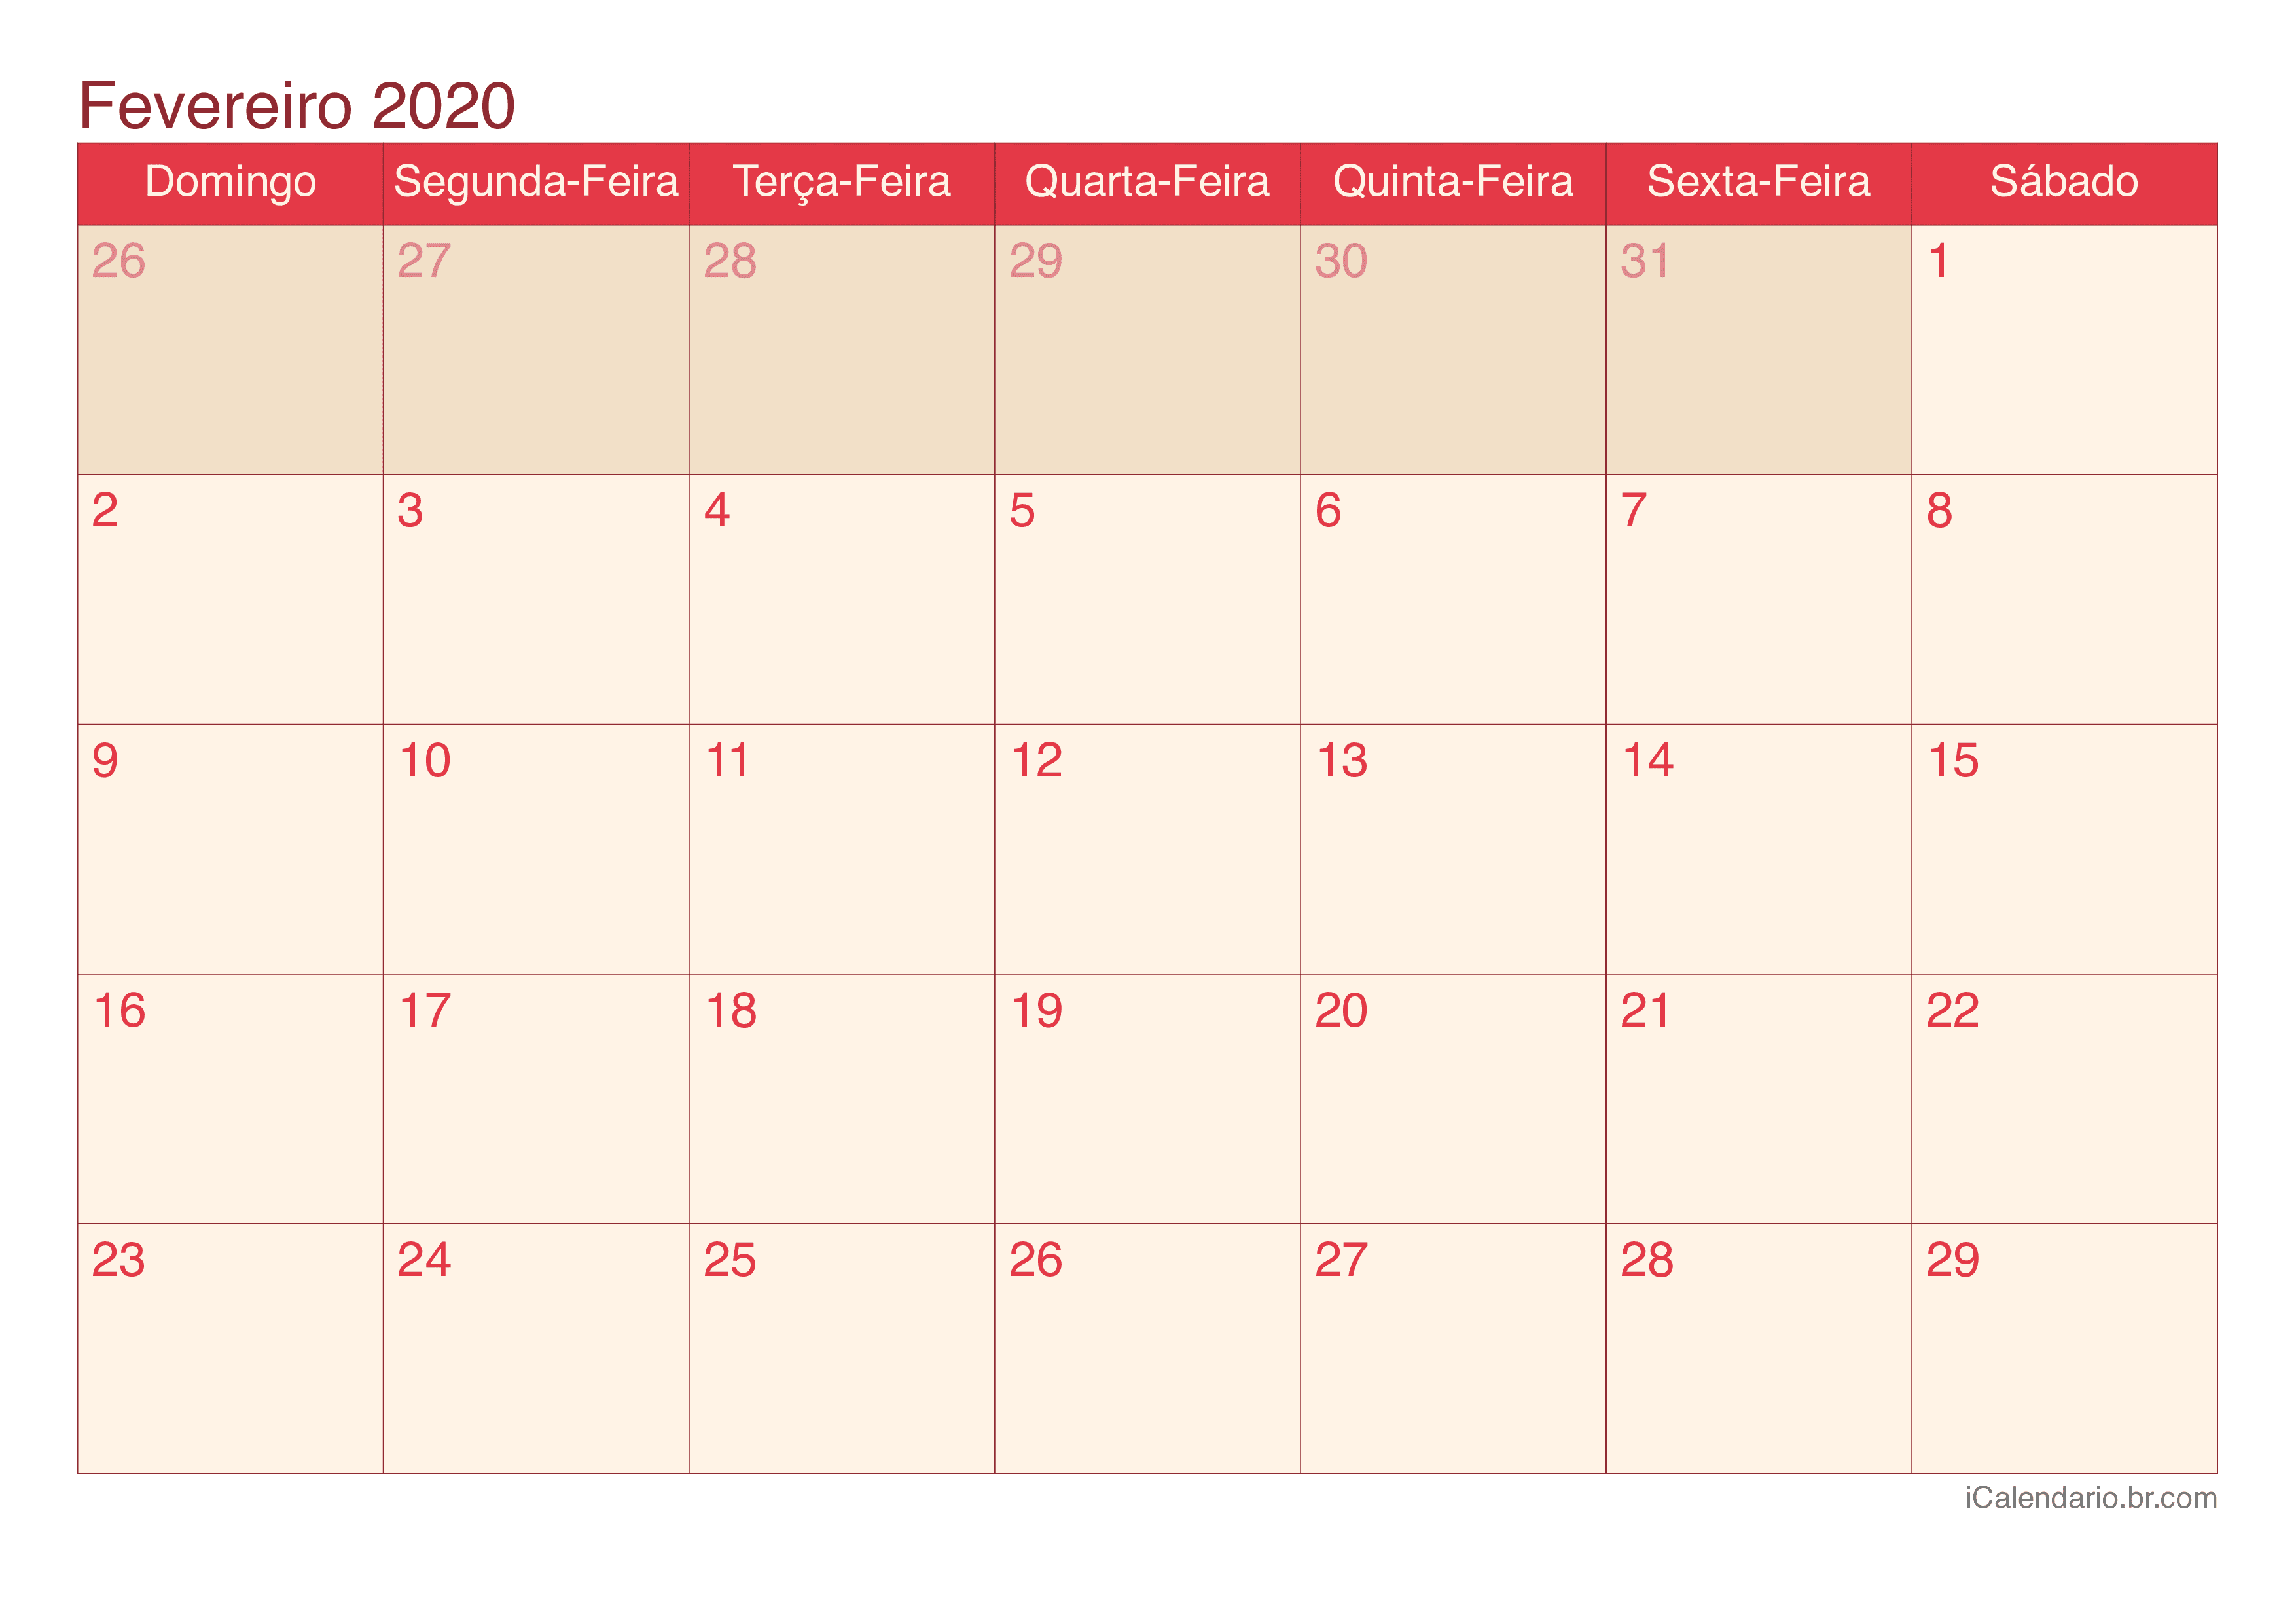 Calendário de fevereiro 2020 - Cherry